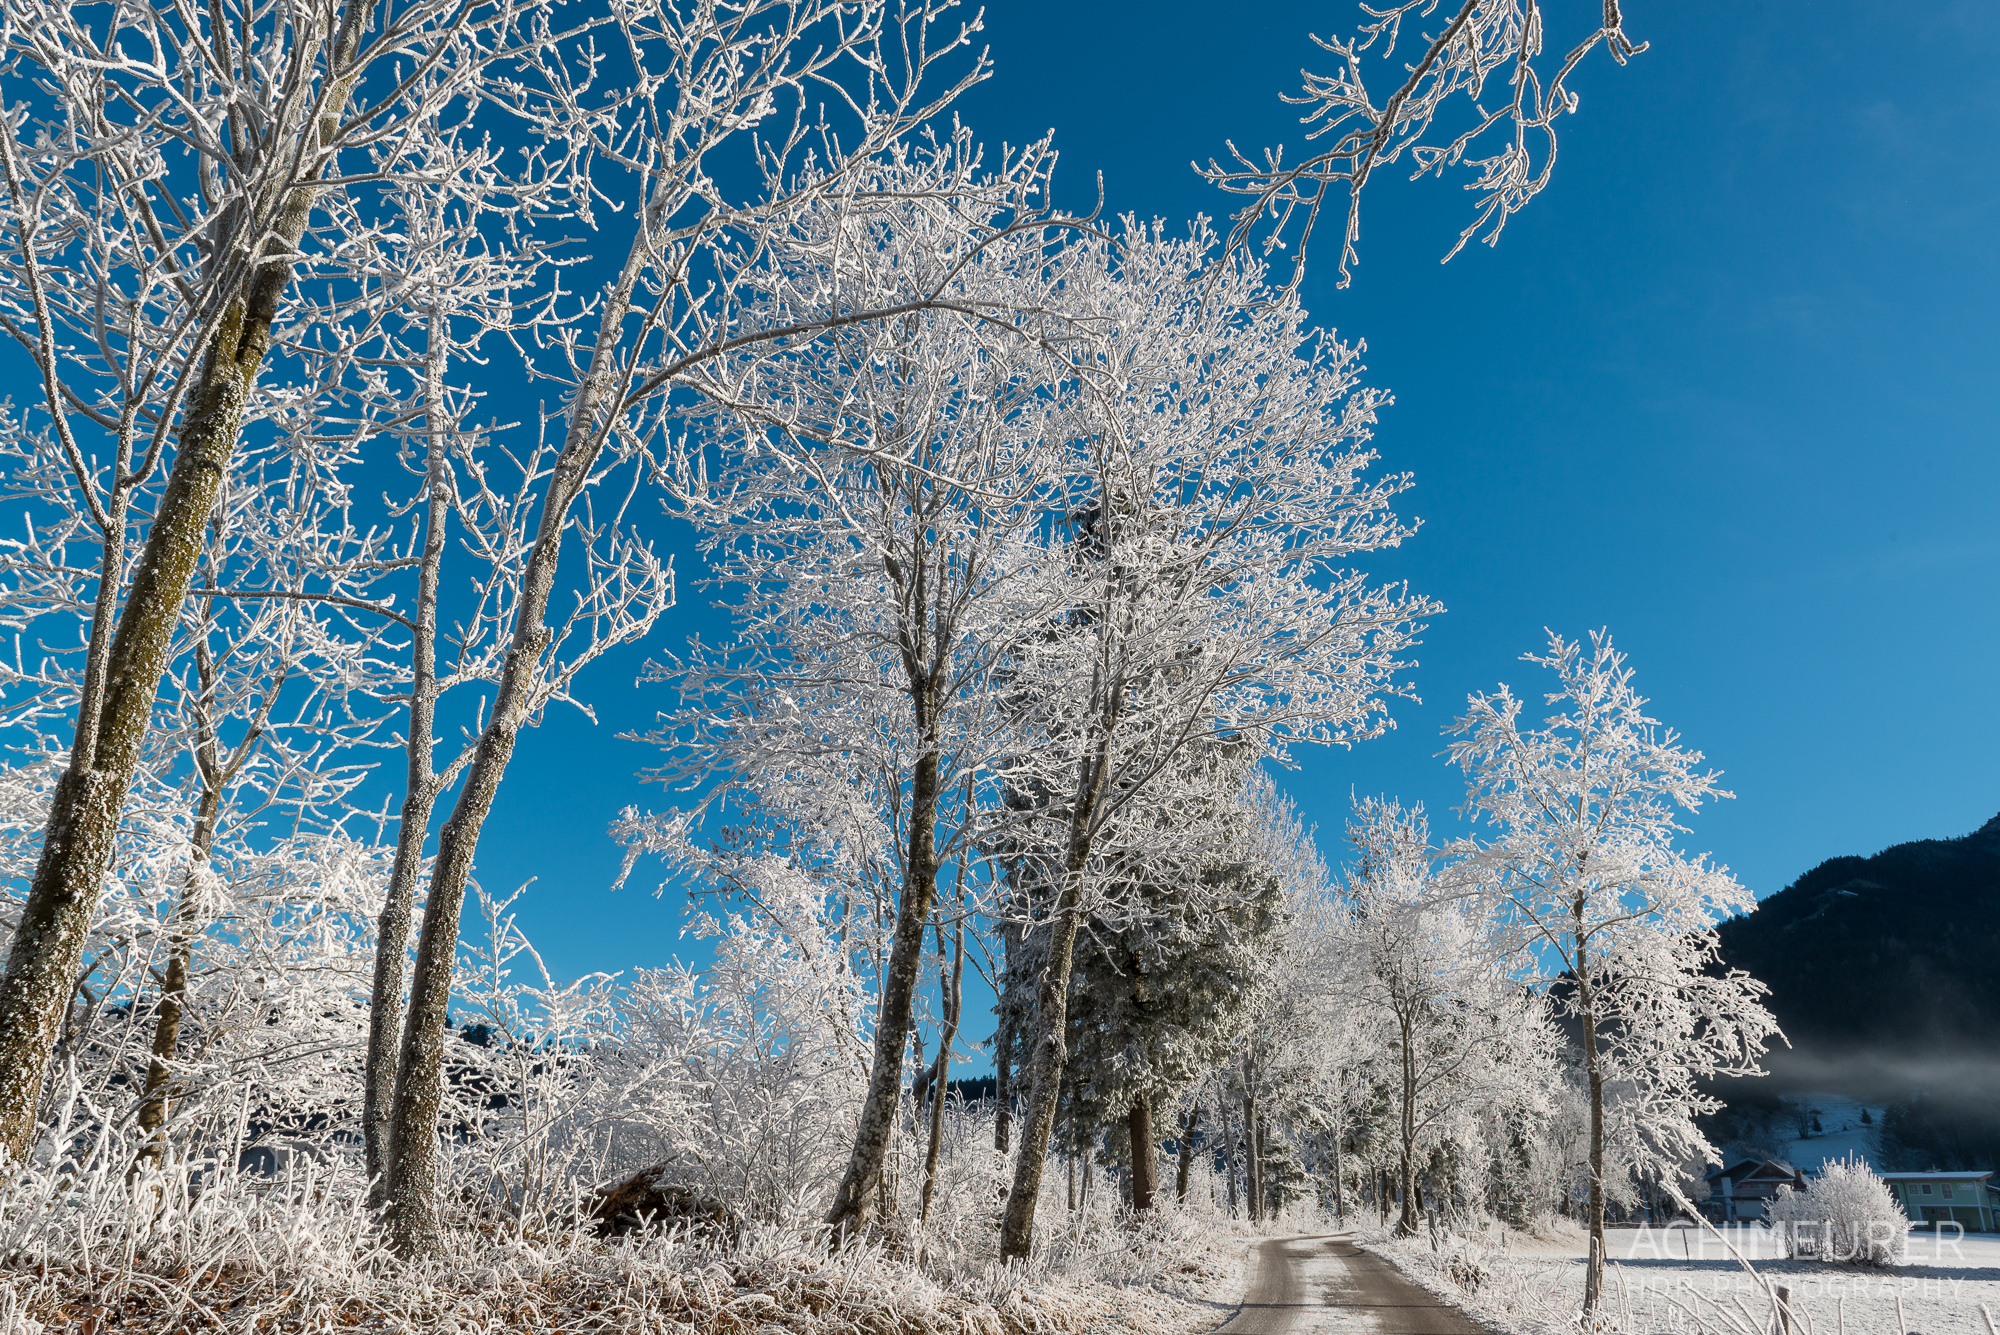 Winter-Wonder-Land Au in Abtenau